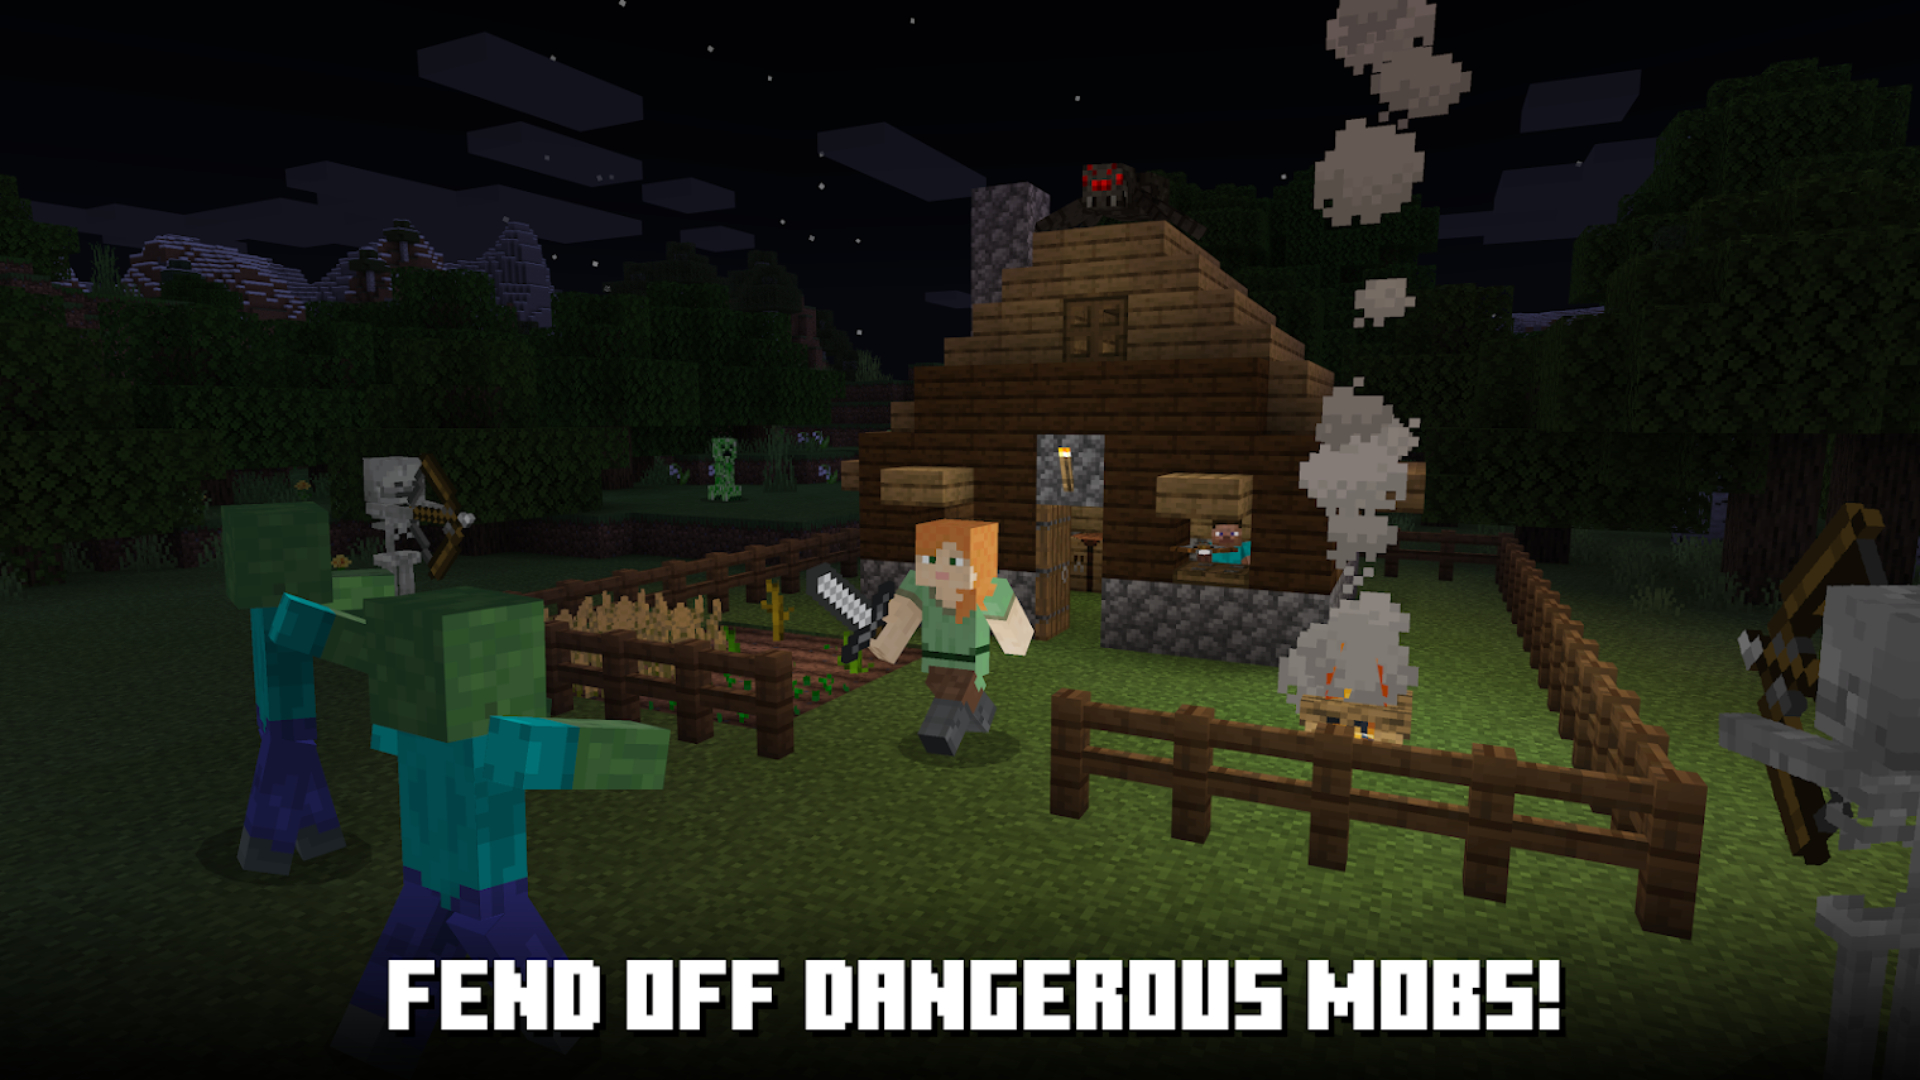 Meilleurs Jeux De Survie Sur Mobile : Minecraft.  L'image Montre Un Personnage Près D'une Maison La Nuit.  Les Zombies Approchent Et Le Texte Se Lit 